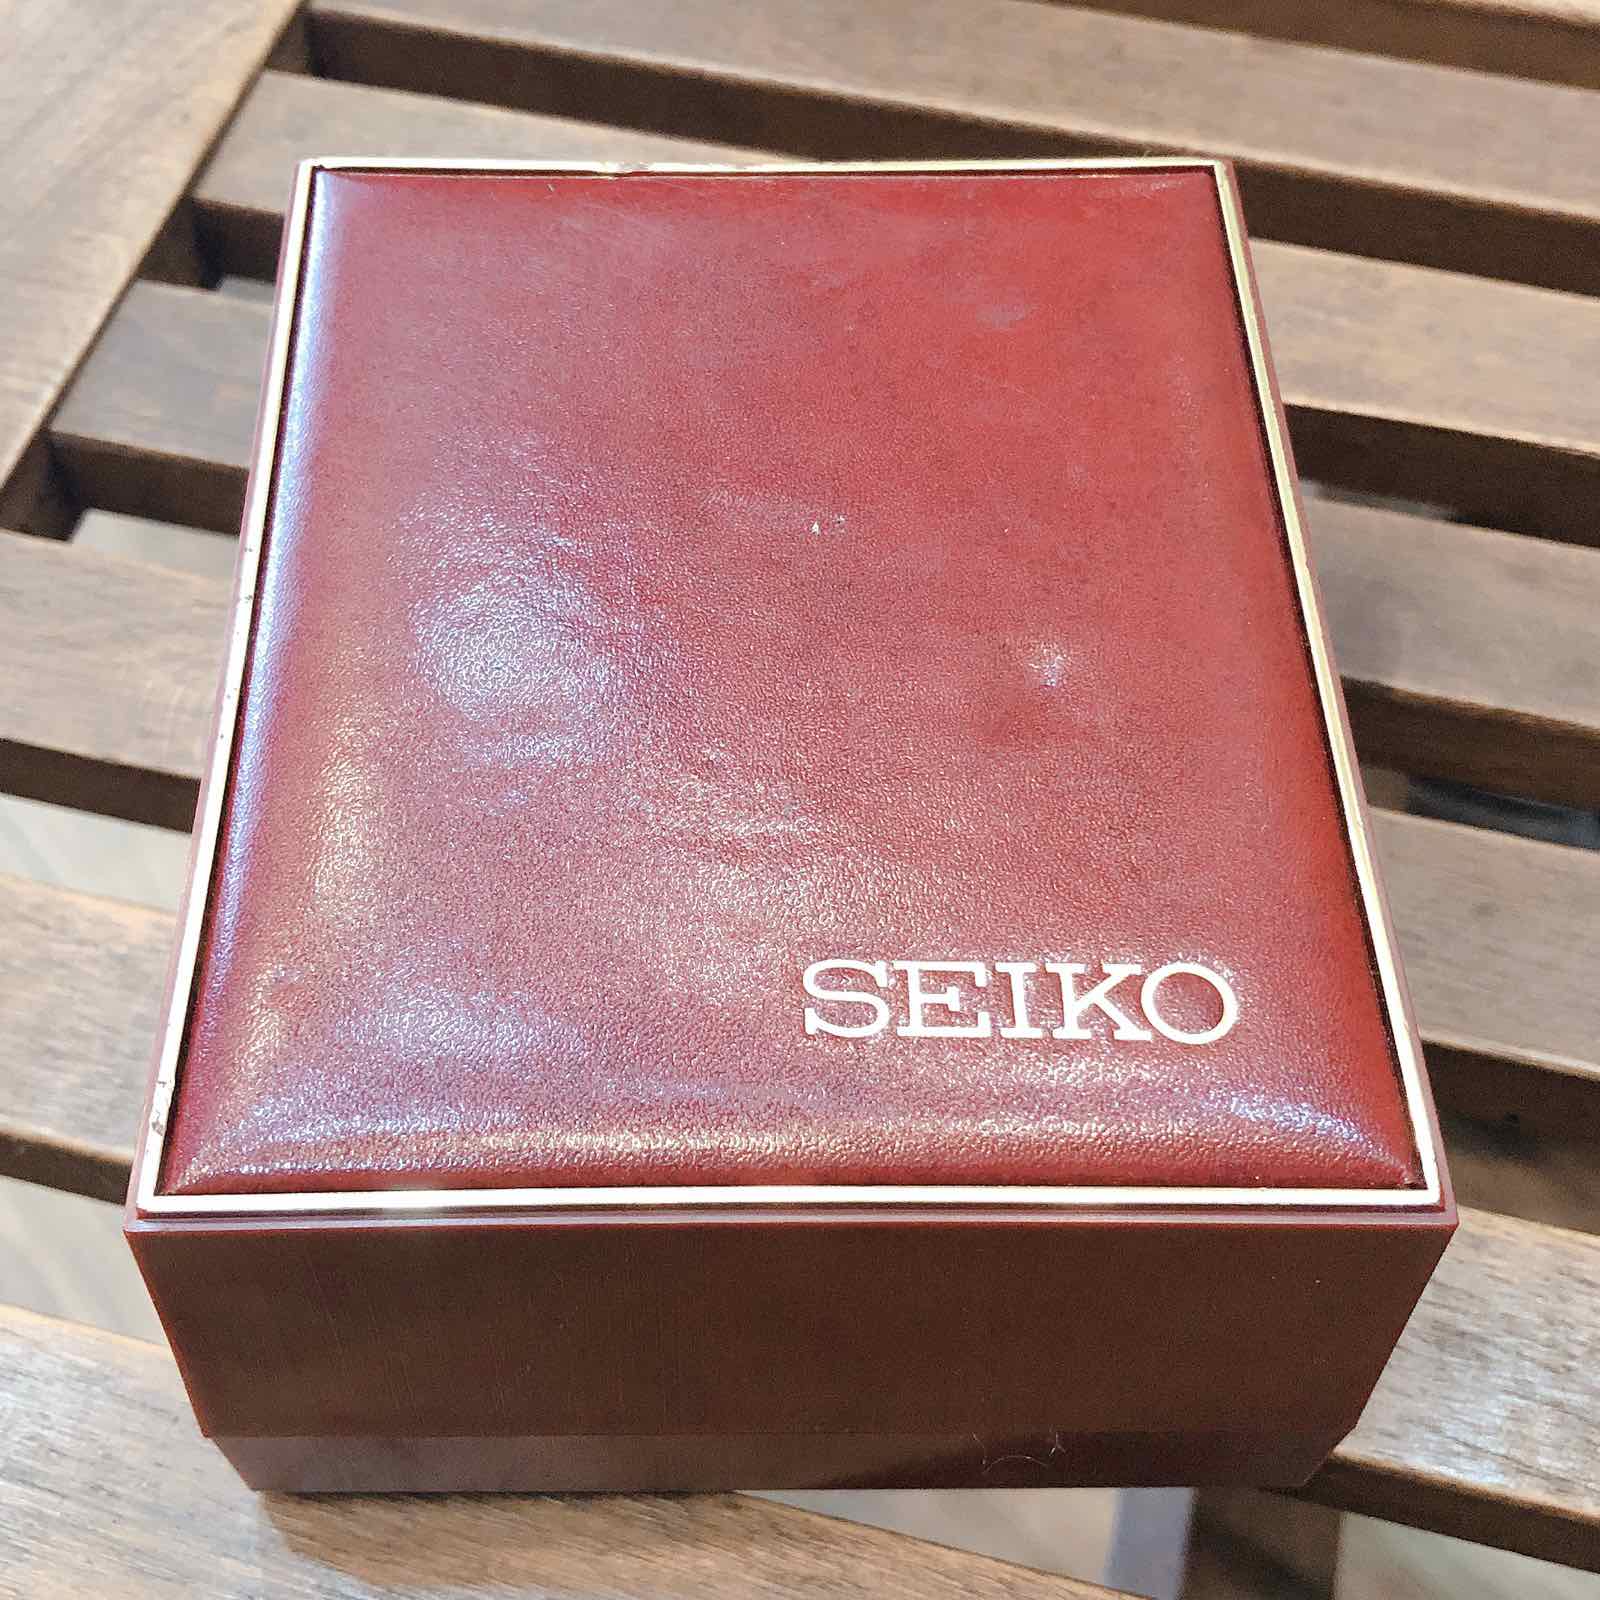 Đồng hồ cổ Seiko King lên dây bọc vàng 14k goldfilled chính hãng nhật bản